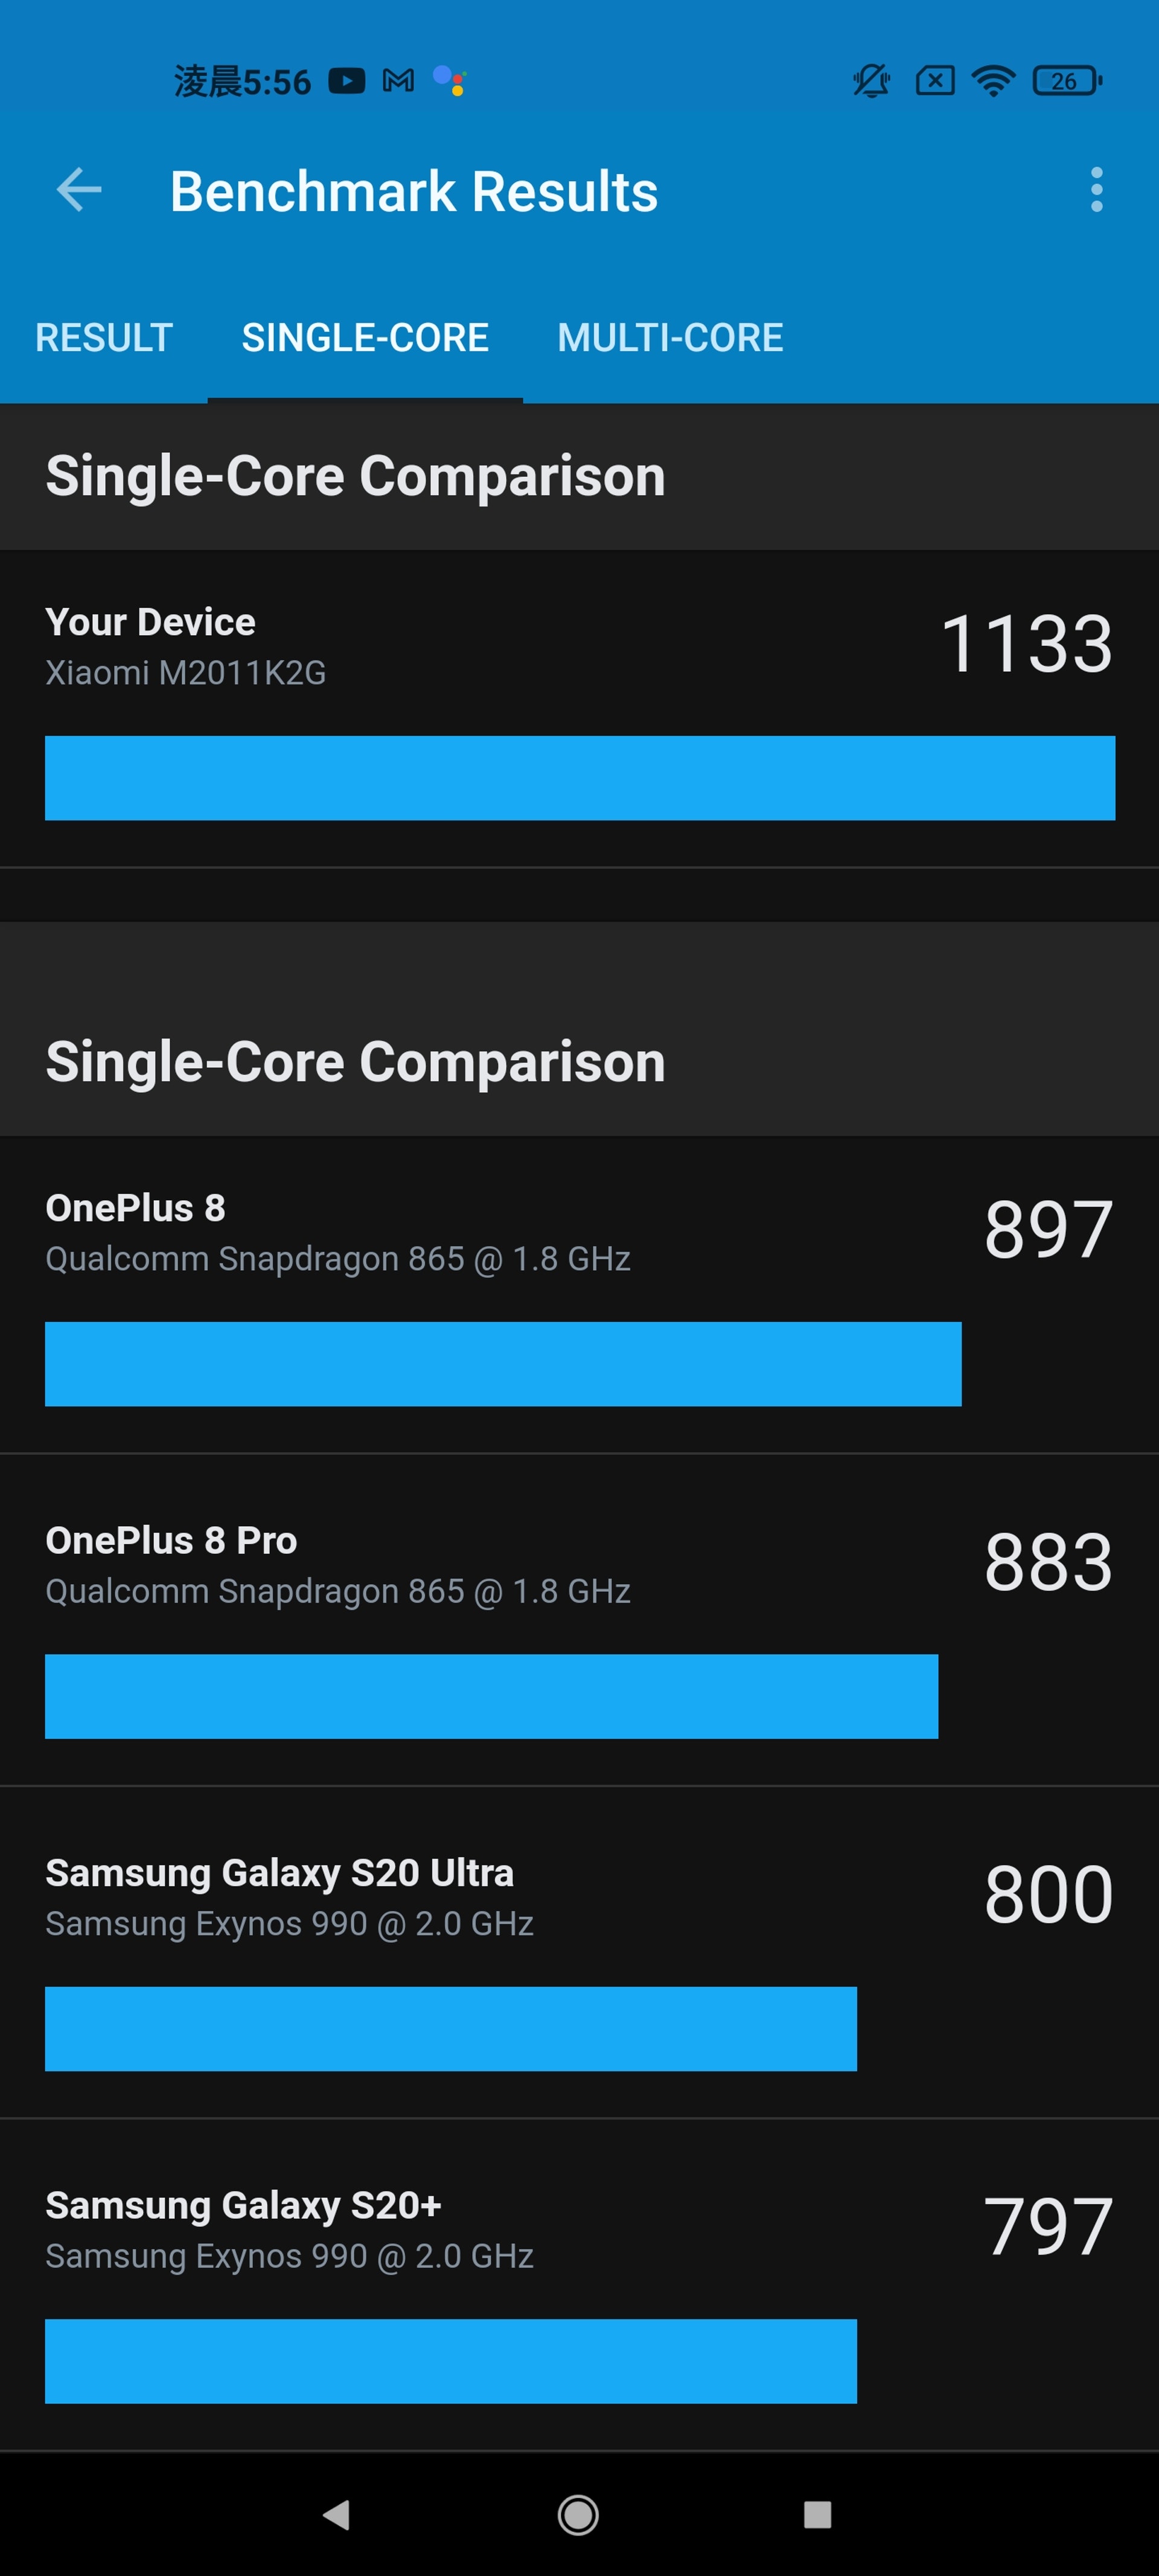 無論是單核還是多核表現，Mi11 所用的 S888 處理器都要比上年度的 S865 為佳。